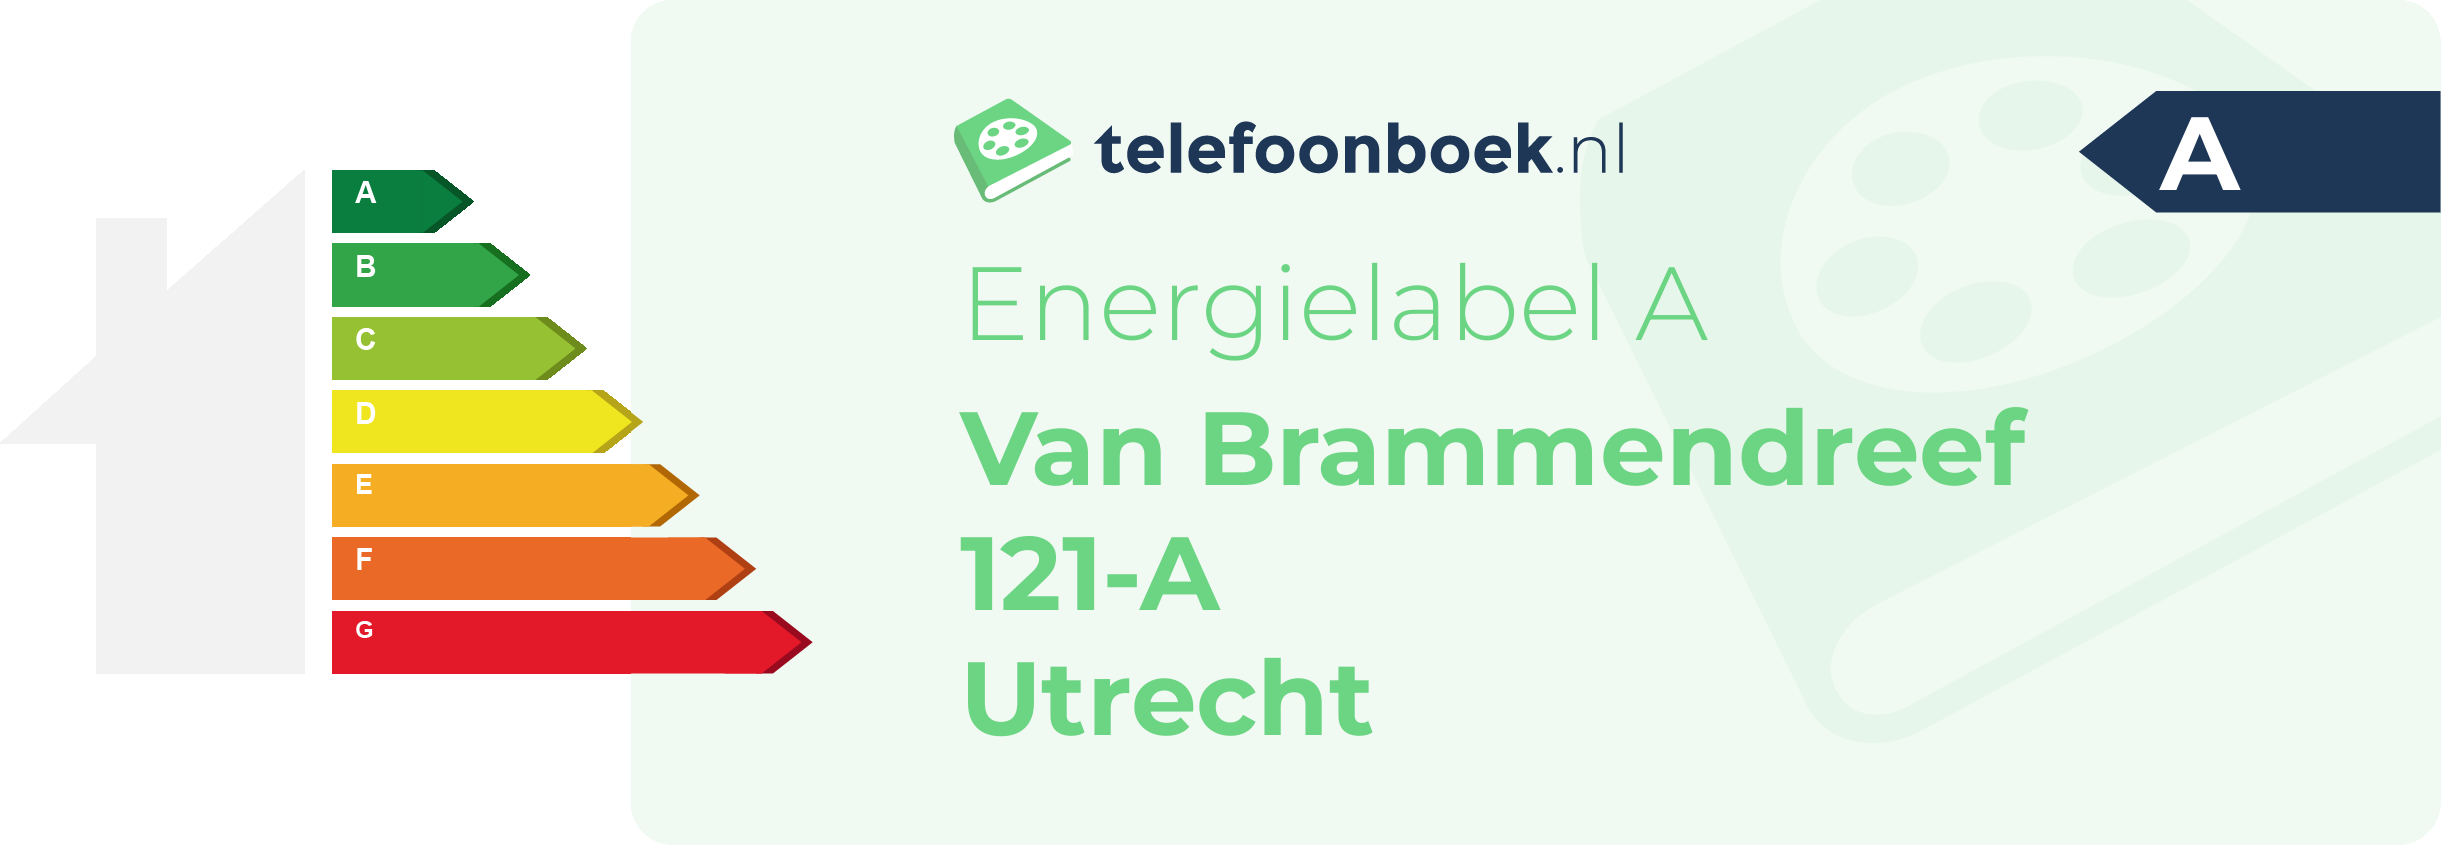 Energielabel Van Brammendreef 121-A Utrecht